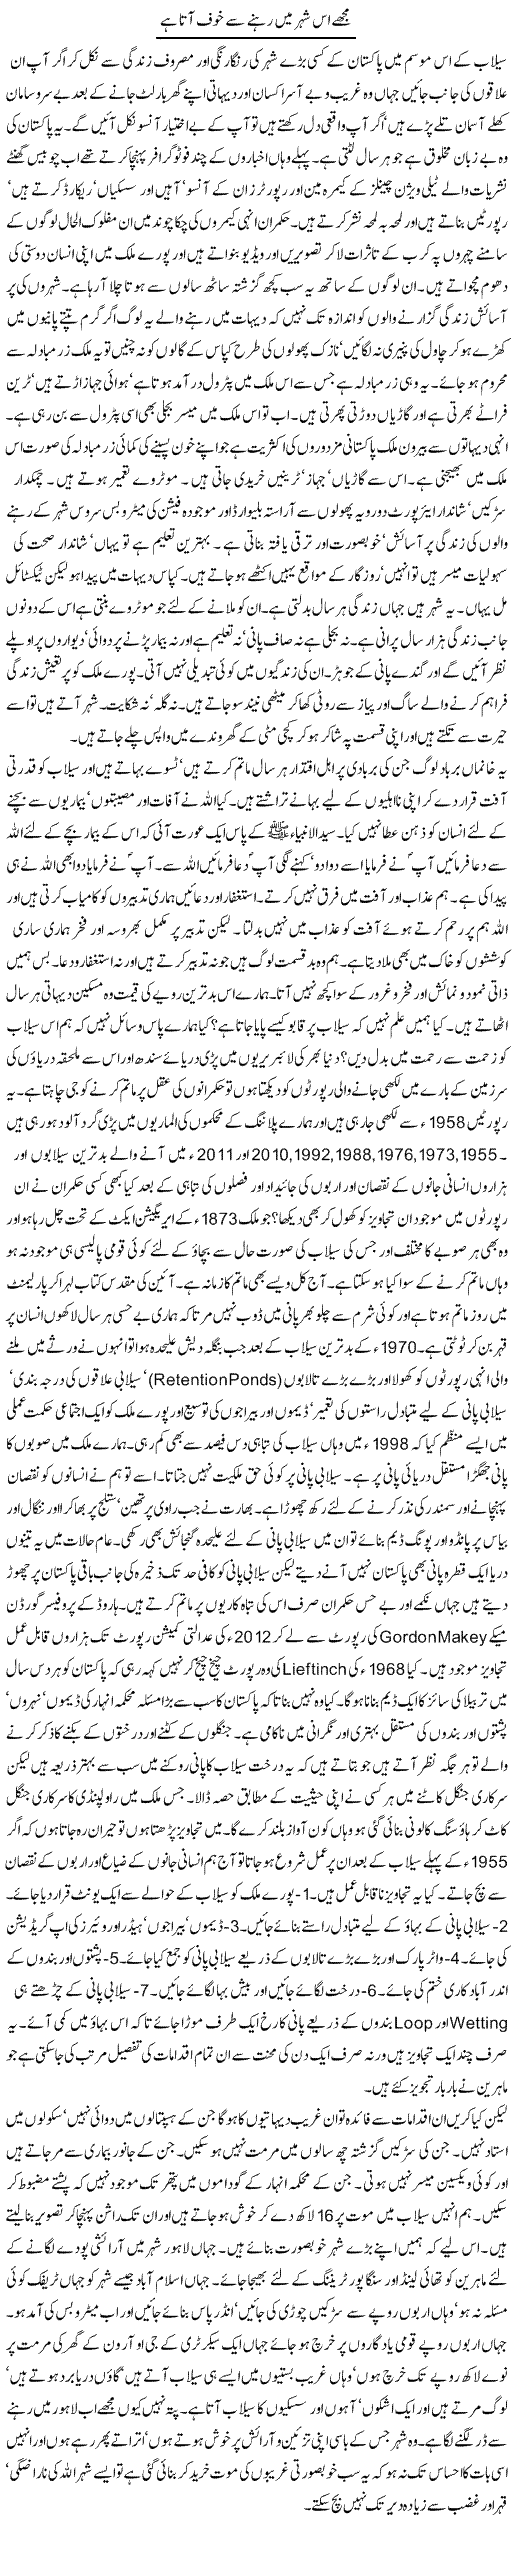 Mujhe Is Sheher Main Rehnay Say Khauf Ata Hai | Orya Maqbool Jan | Daily Urdu Columns